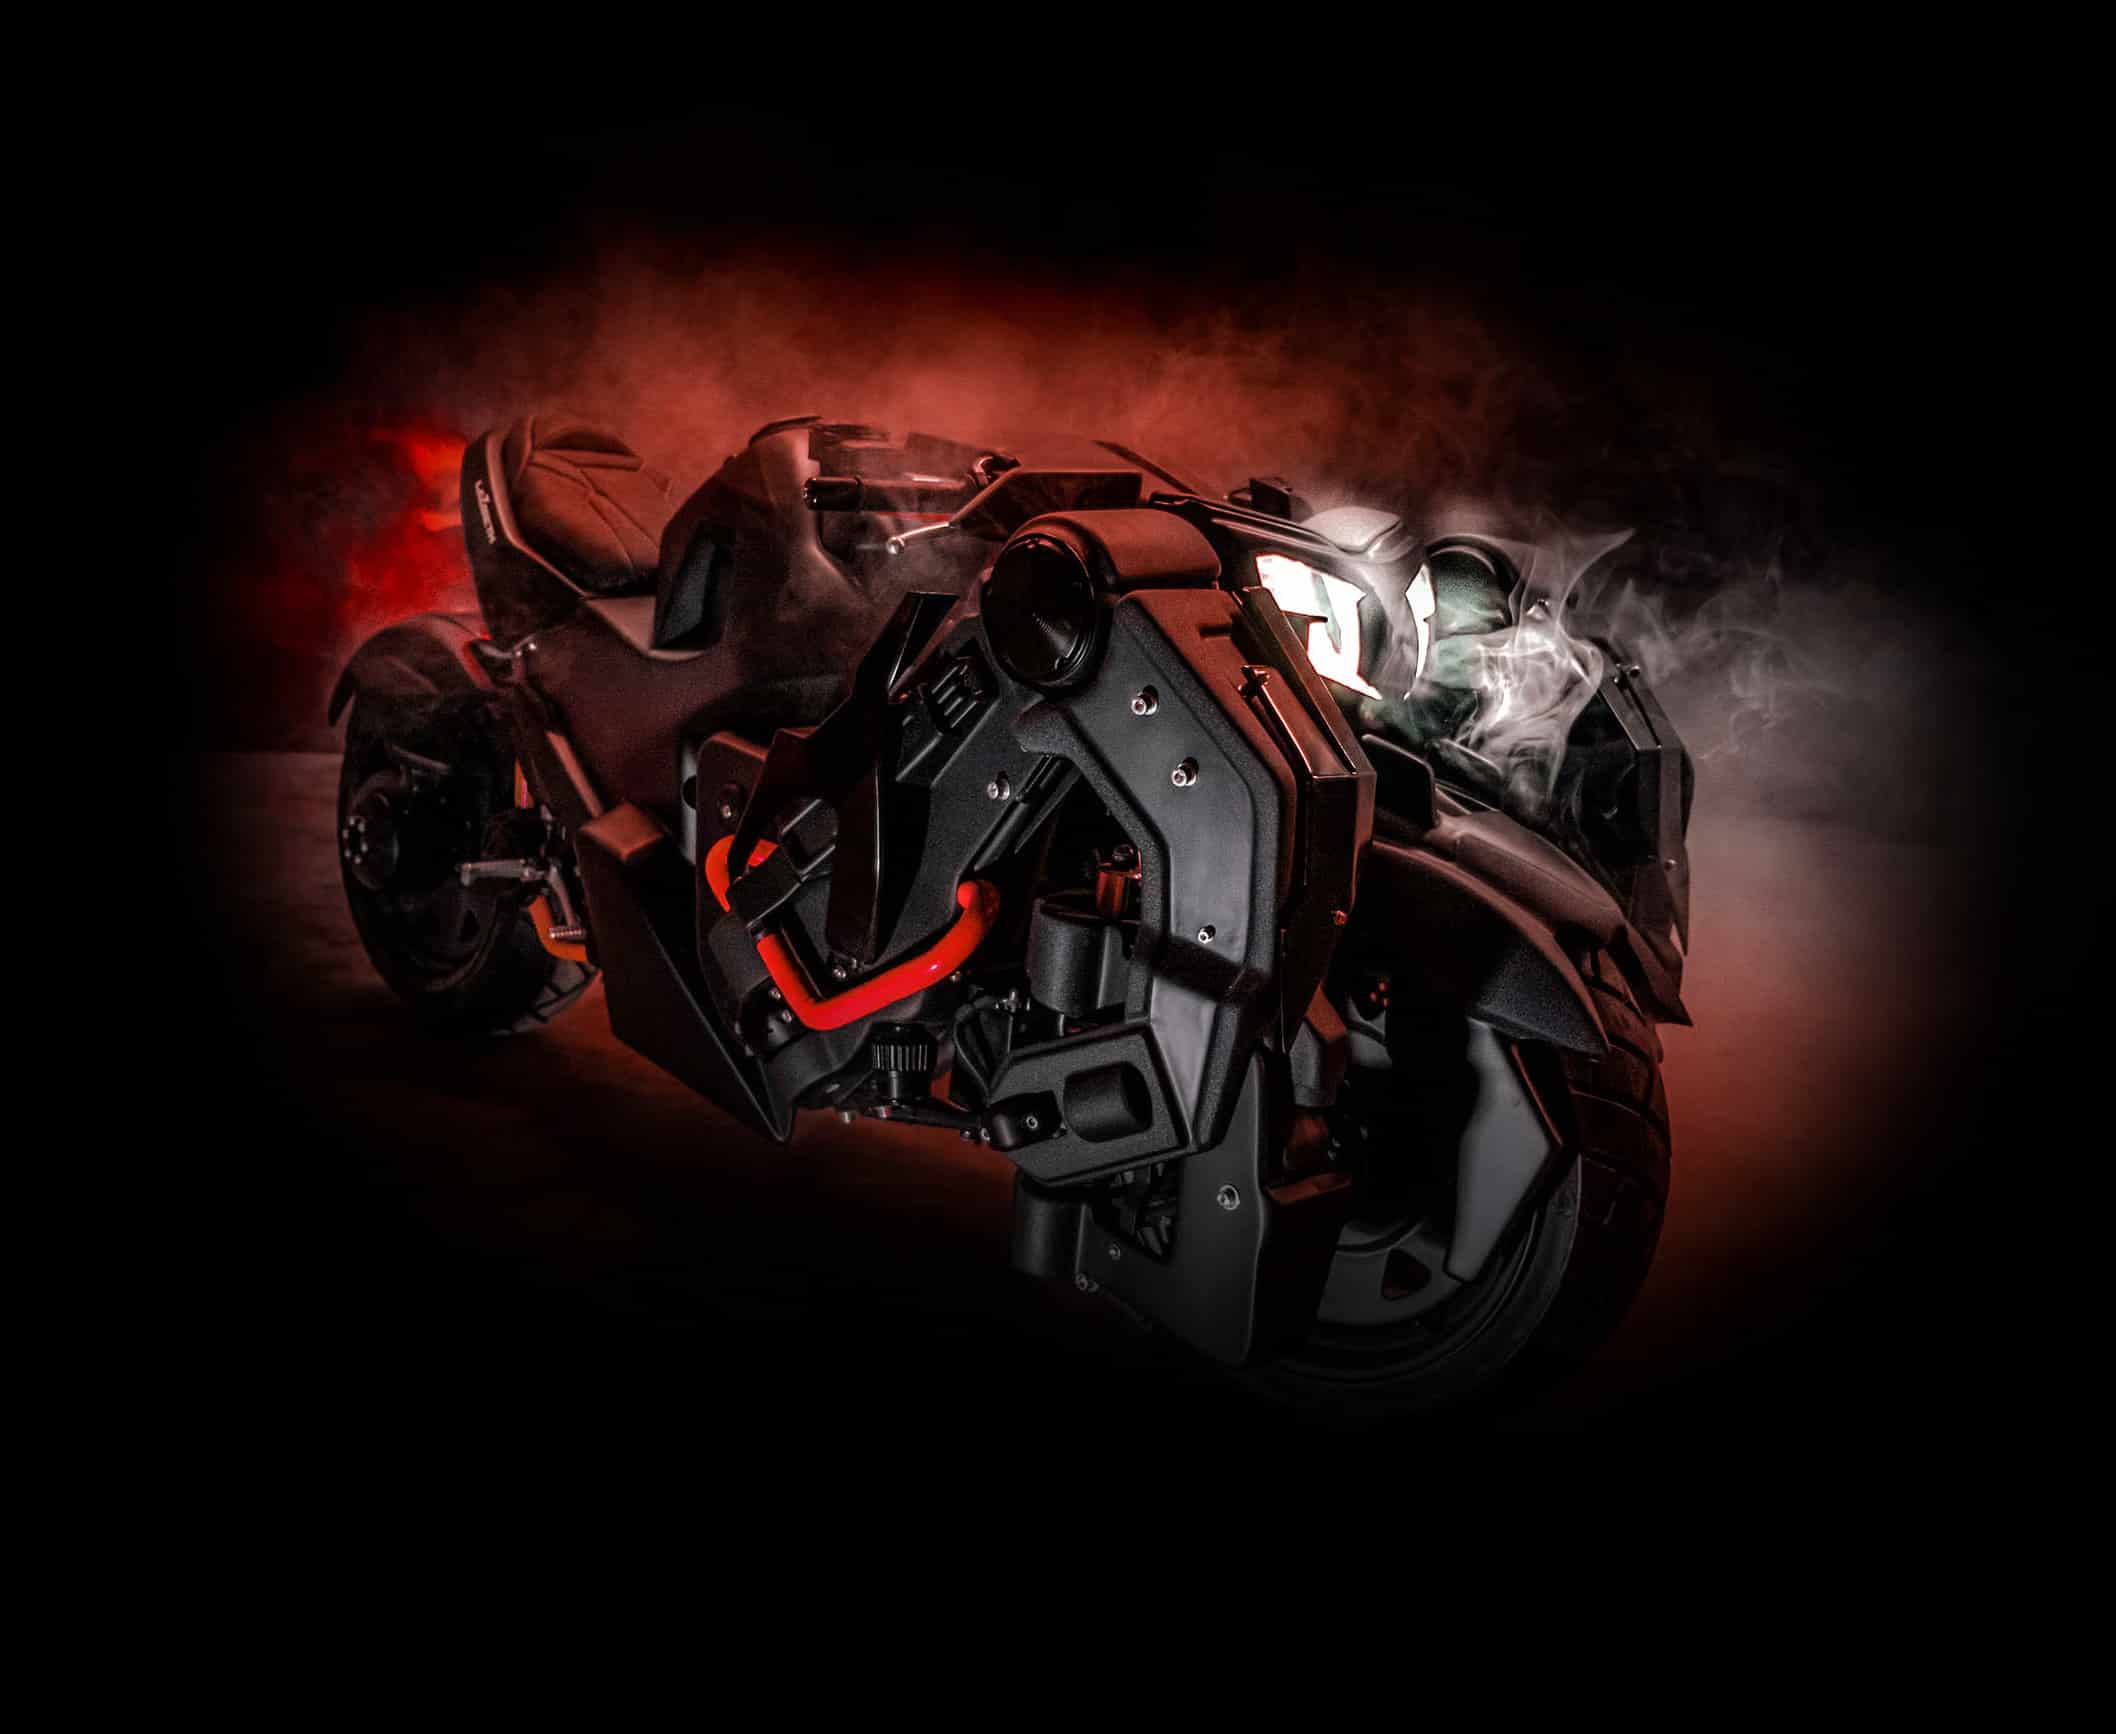 Découvrez la Batcycle Lazareth, la moto ultime pour les amateurs de super-héros et de vitesse.